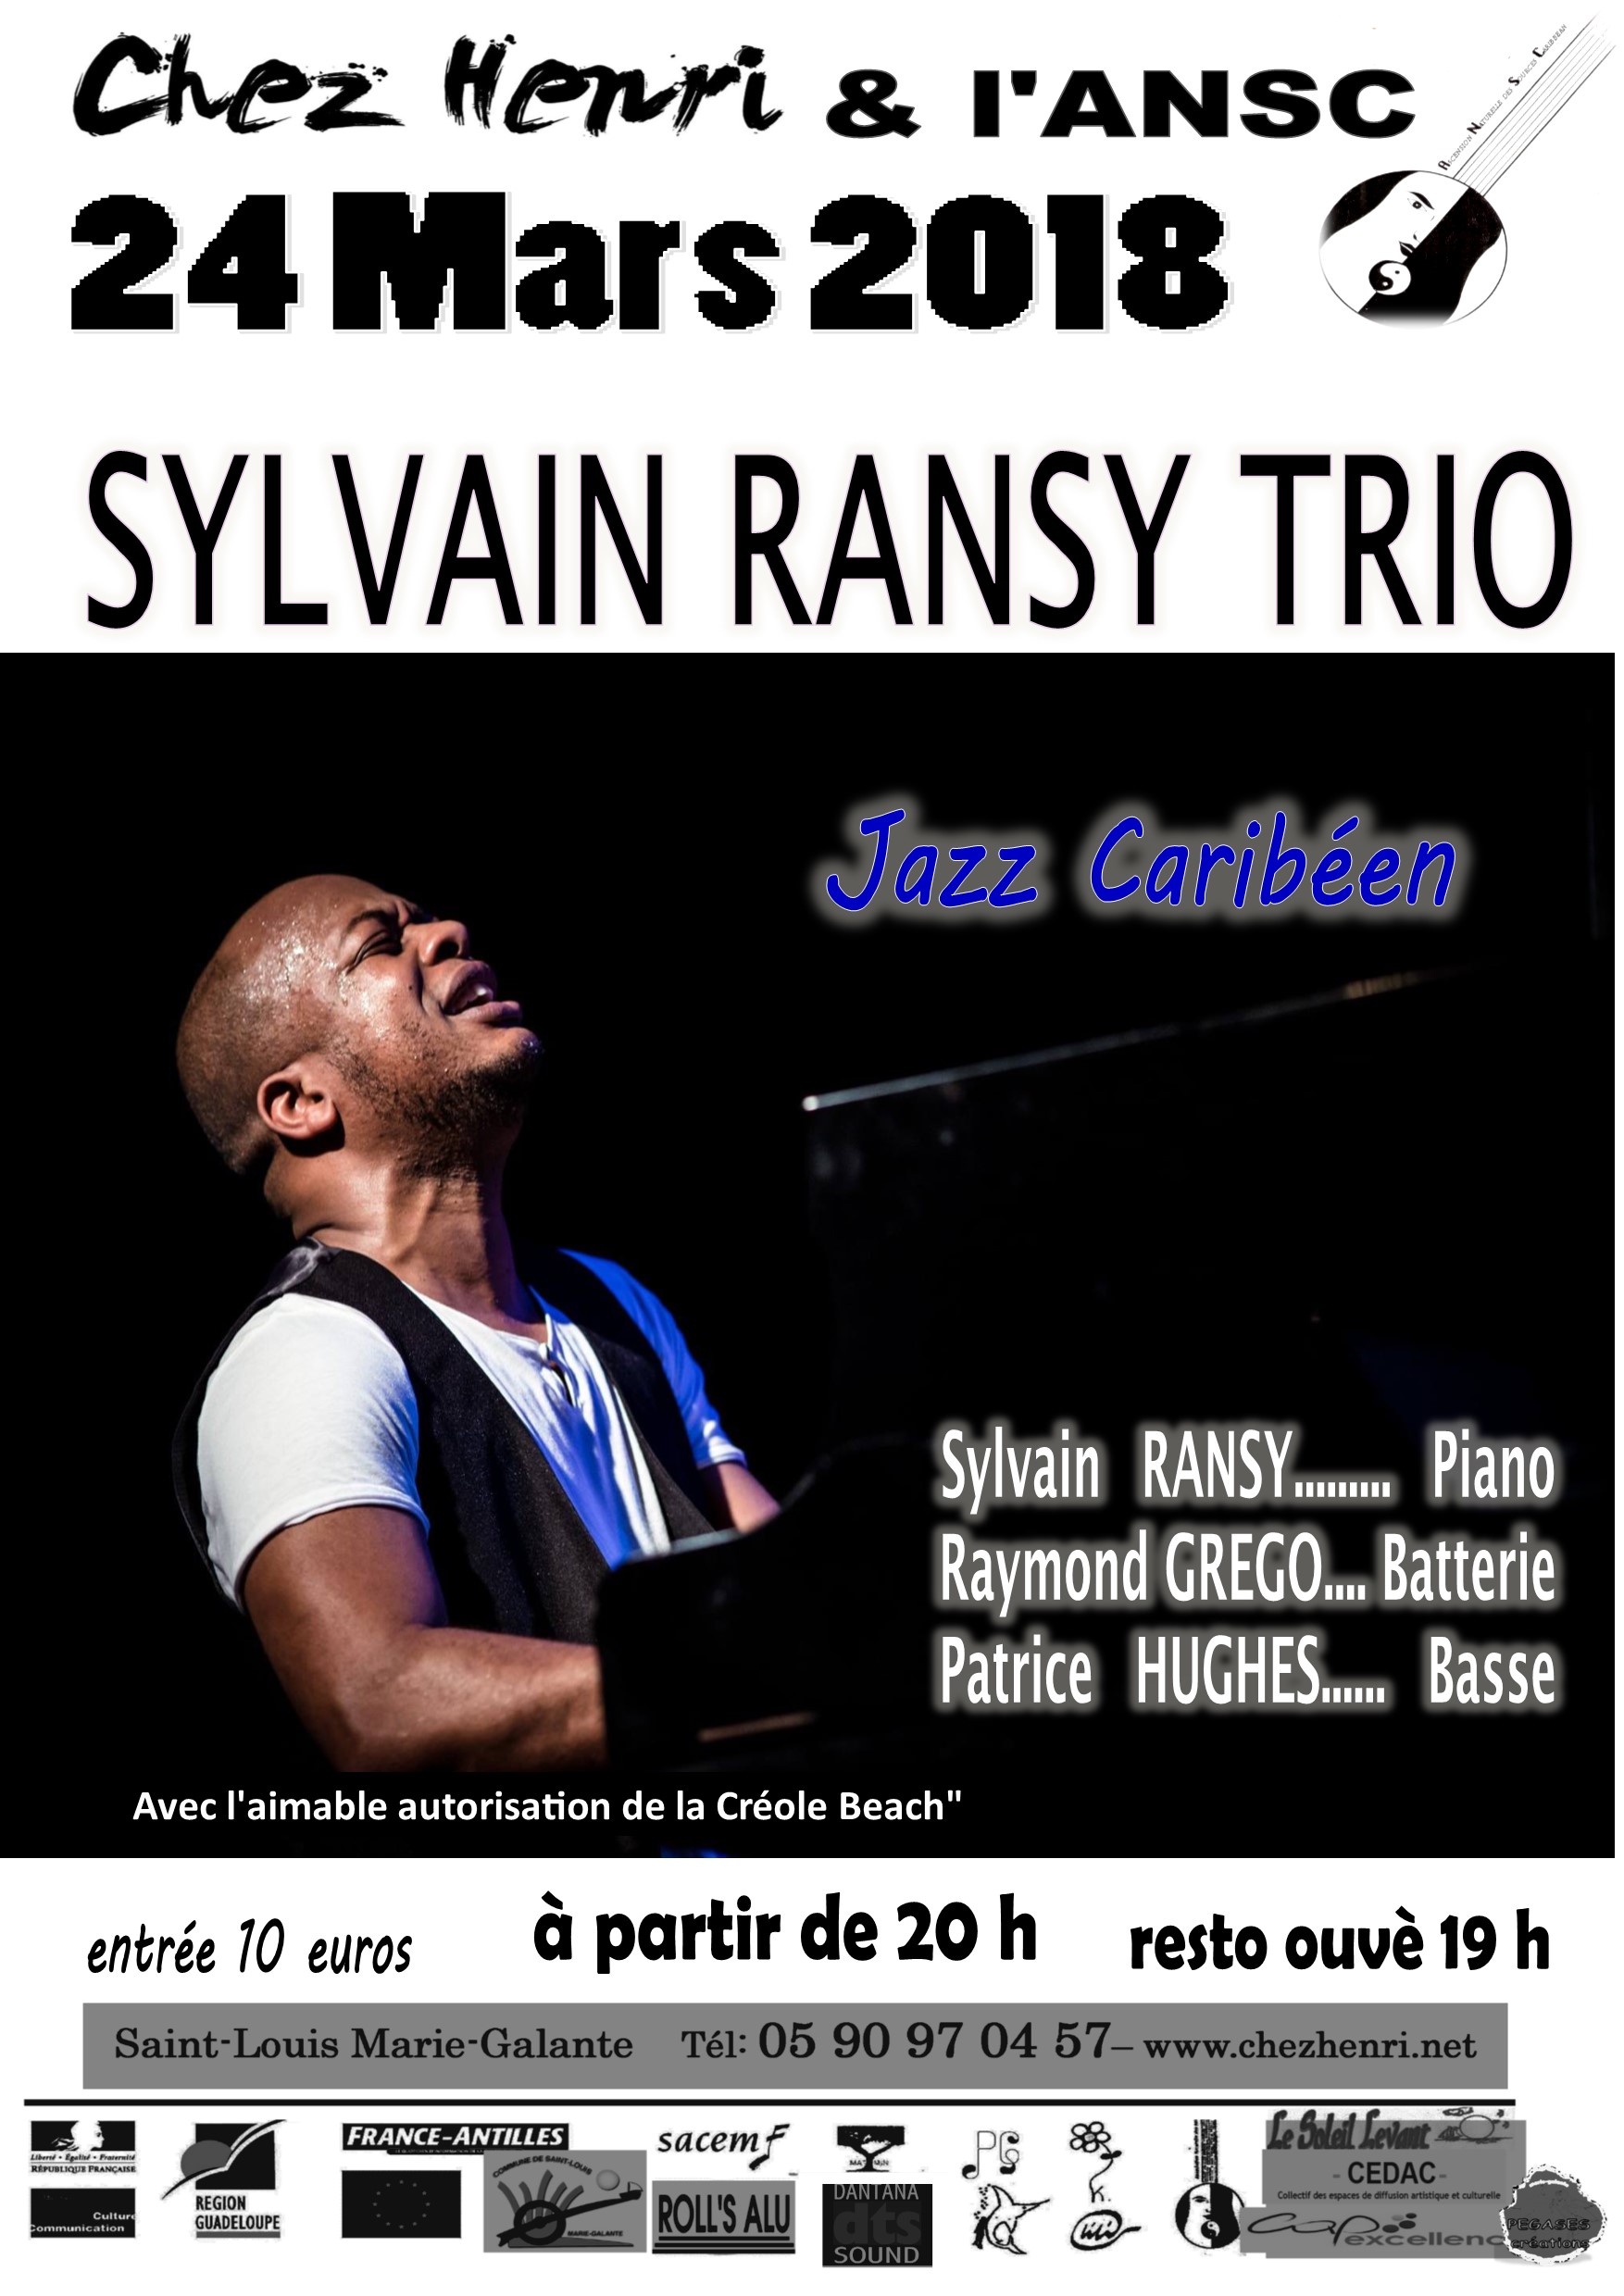 Sylvain Ransy trio